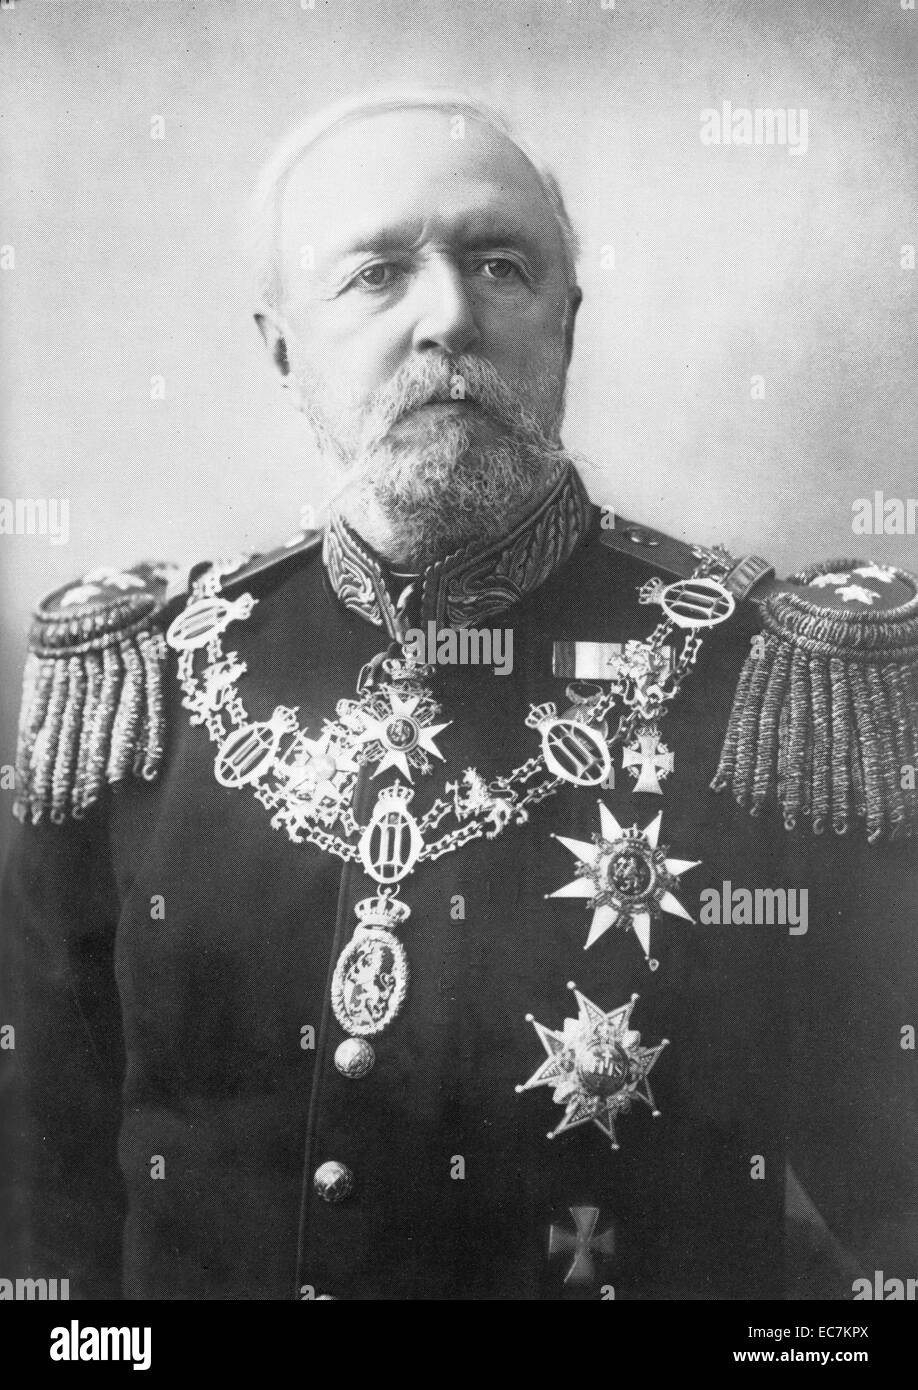 Oscar II (21 de enero de 1829 - 8 de diciembre de 1907), el Rey de Suecia desde 1872 hasta su muerte y el Rey de Noruega desde 1872 hasta 1905 Foto de stock